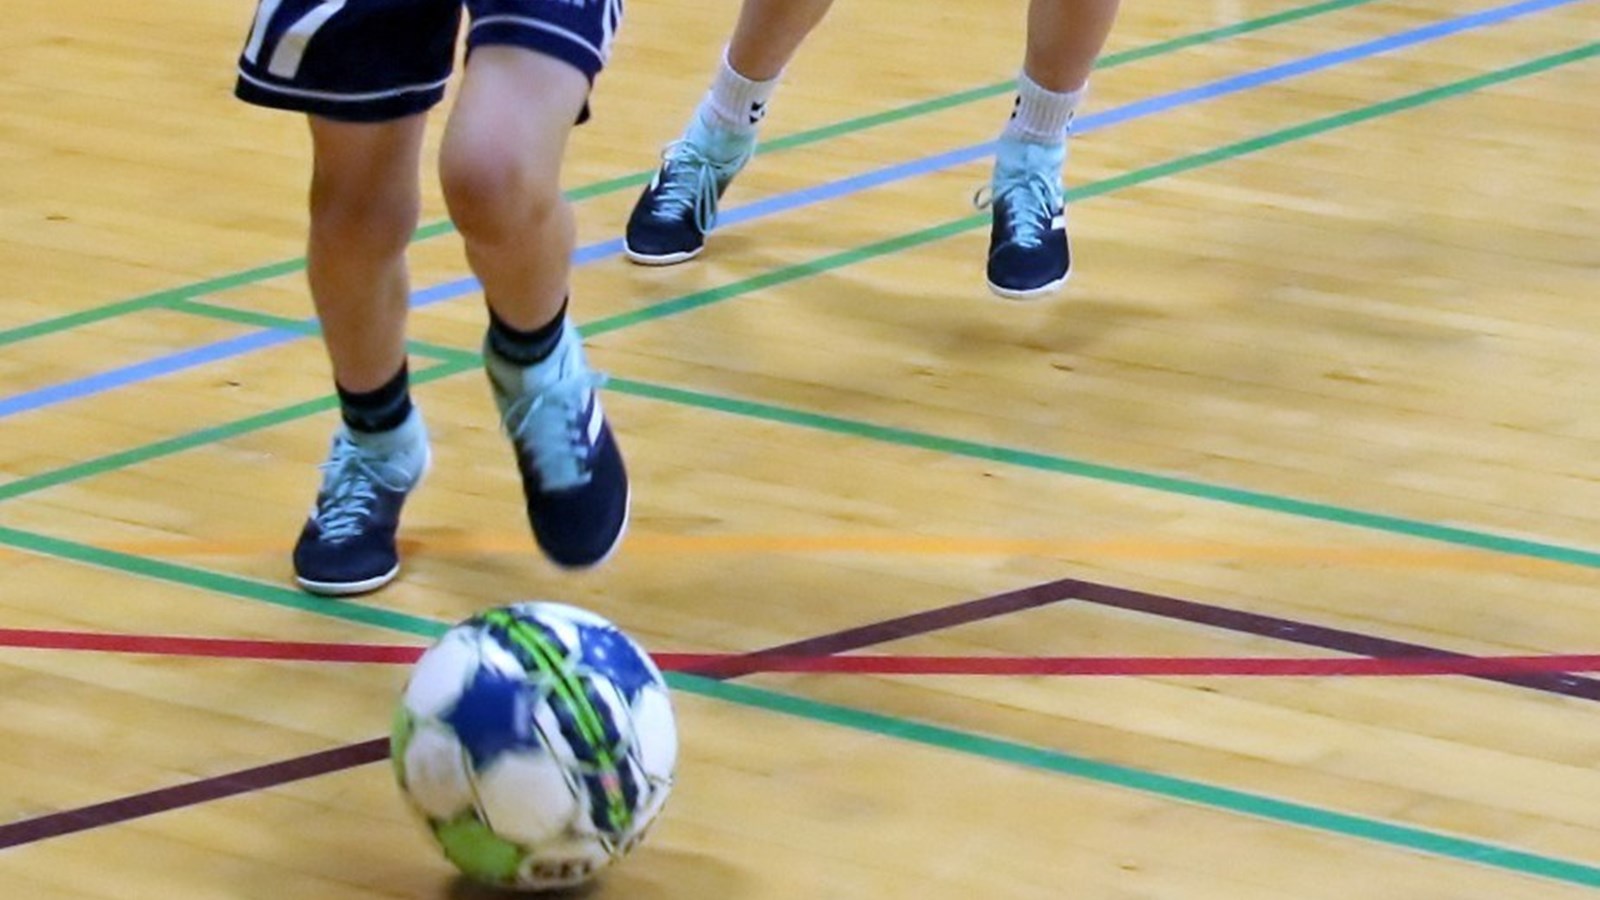 Ros til hallerne: Indefodbold fungerer godt trods coronarestriktioner